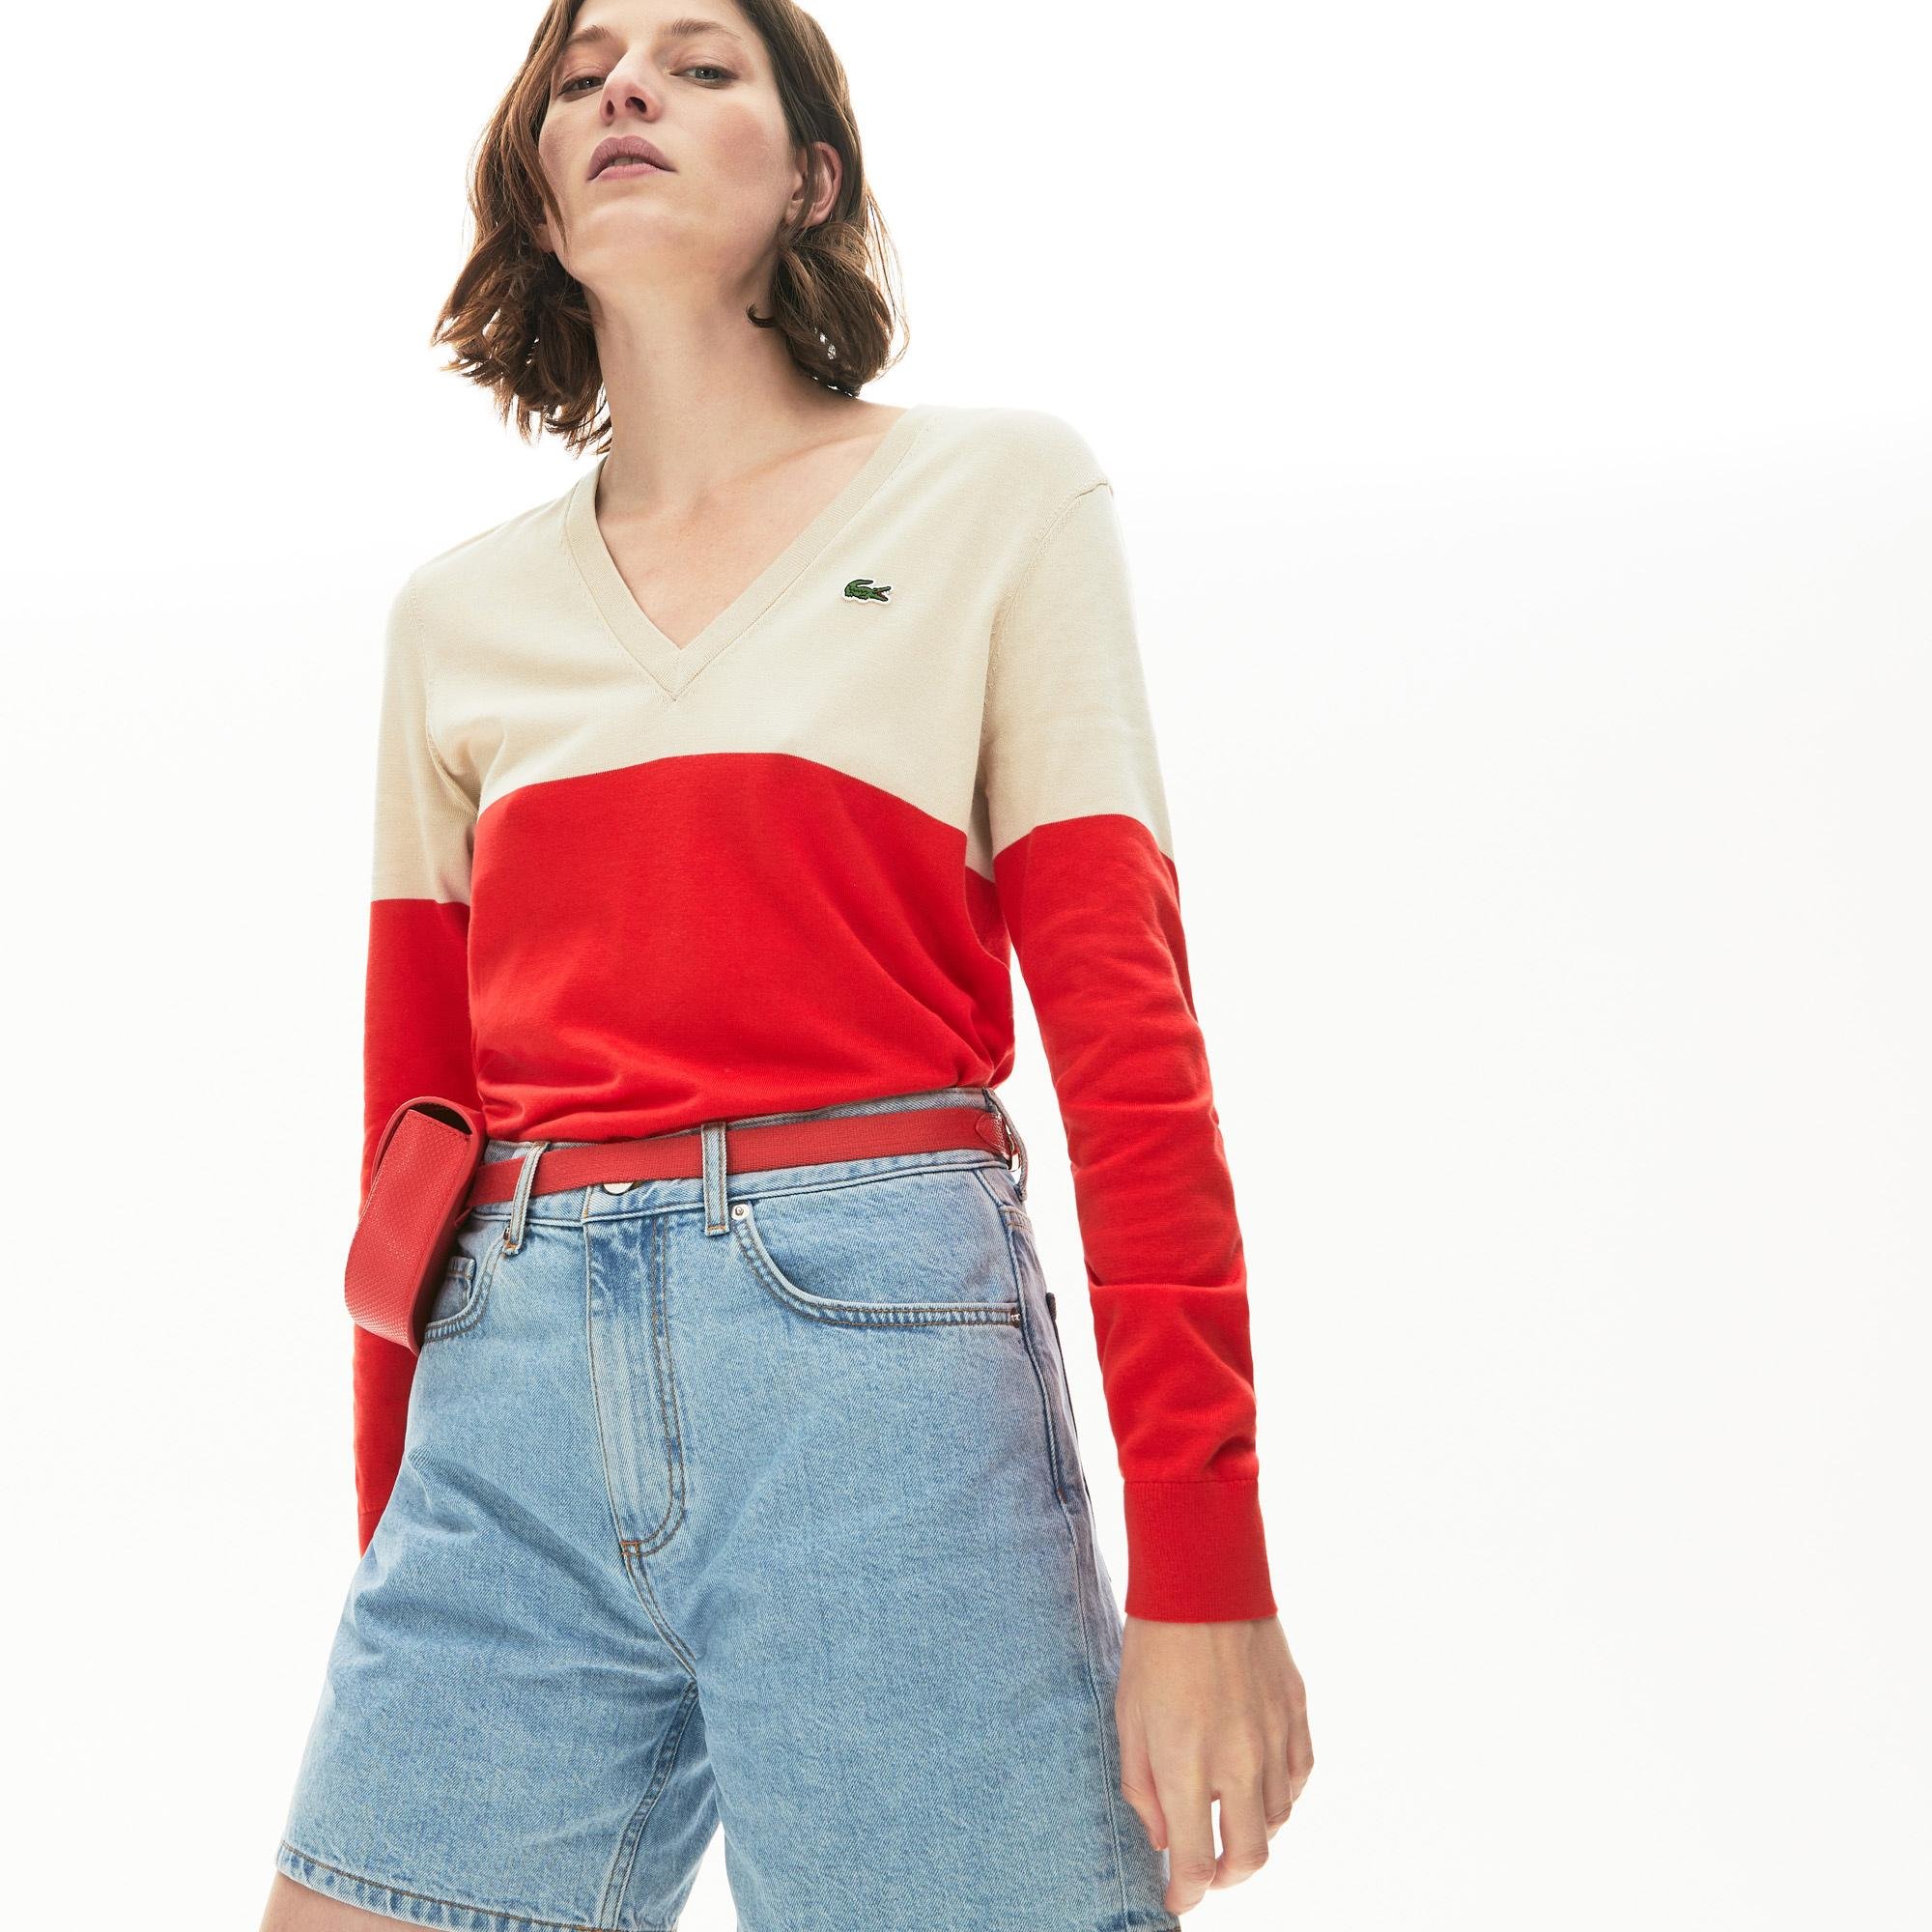 Lacoste Women's Colourblock Cotton V-Neck Sweater